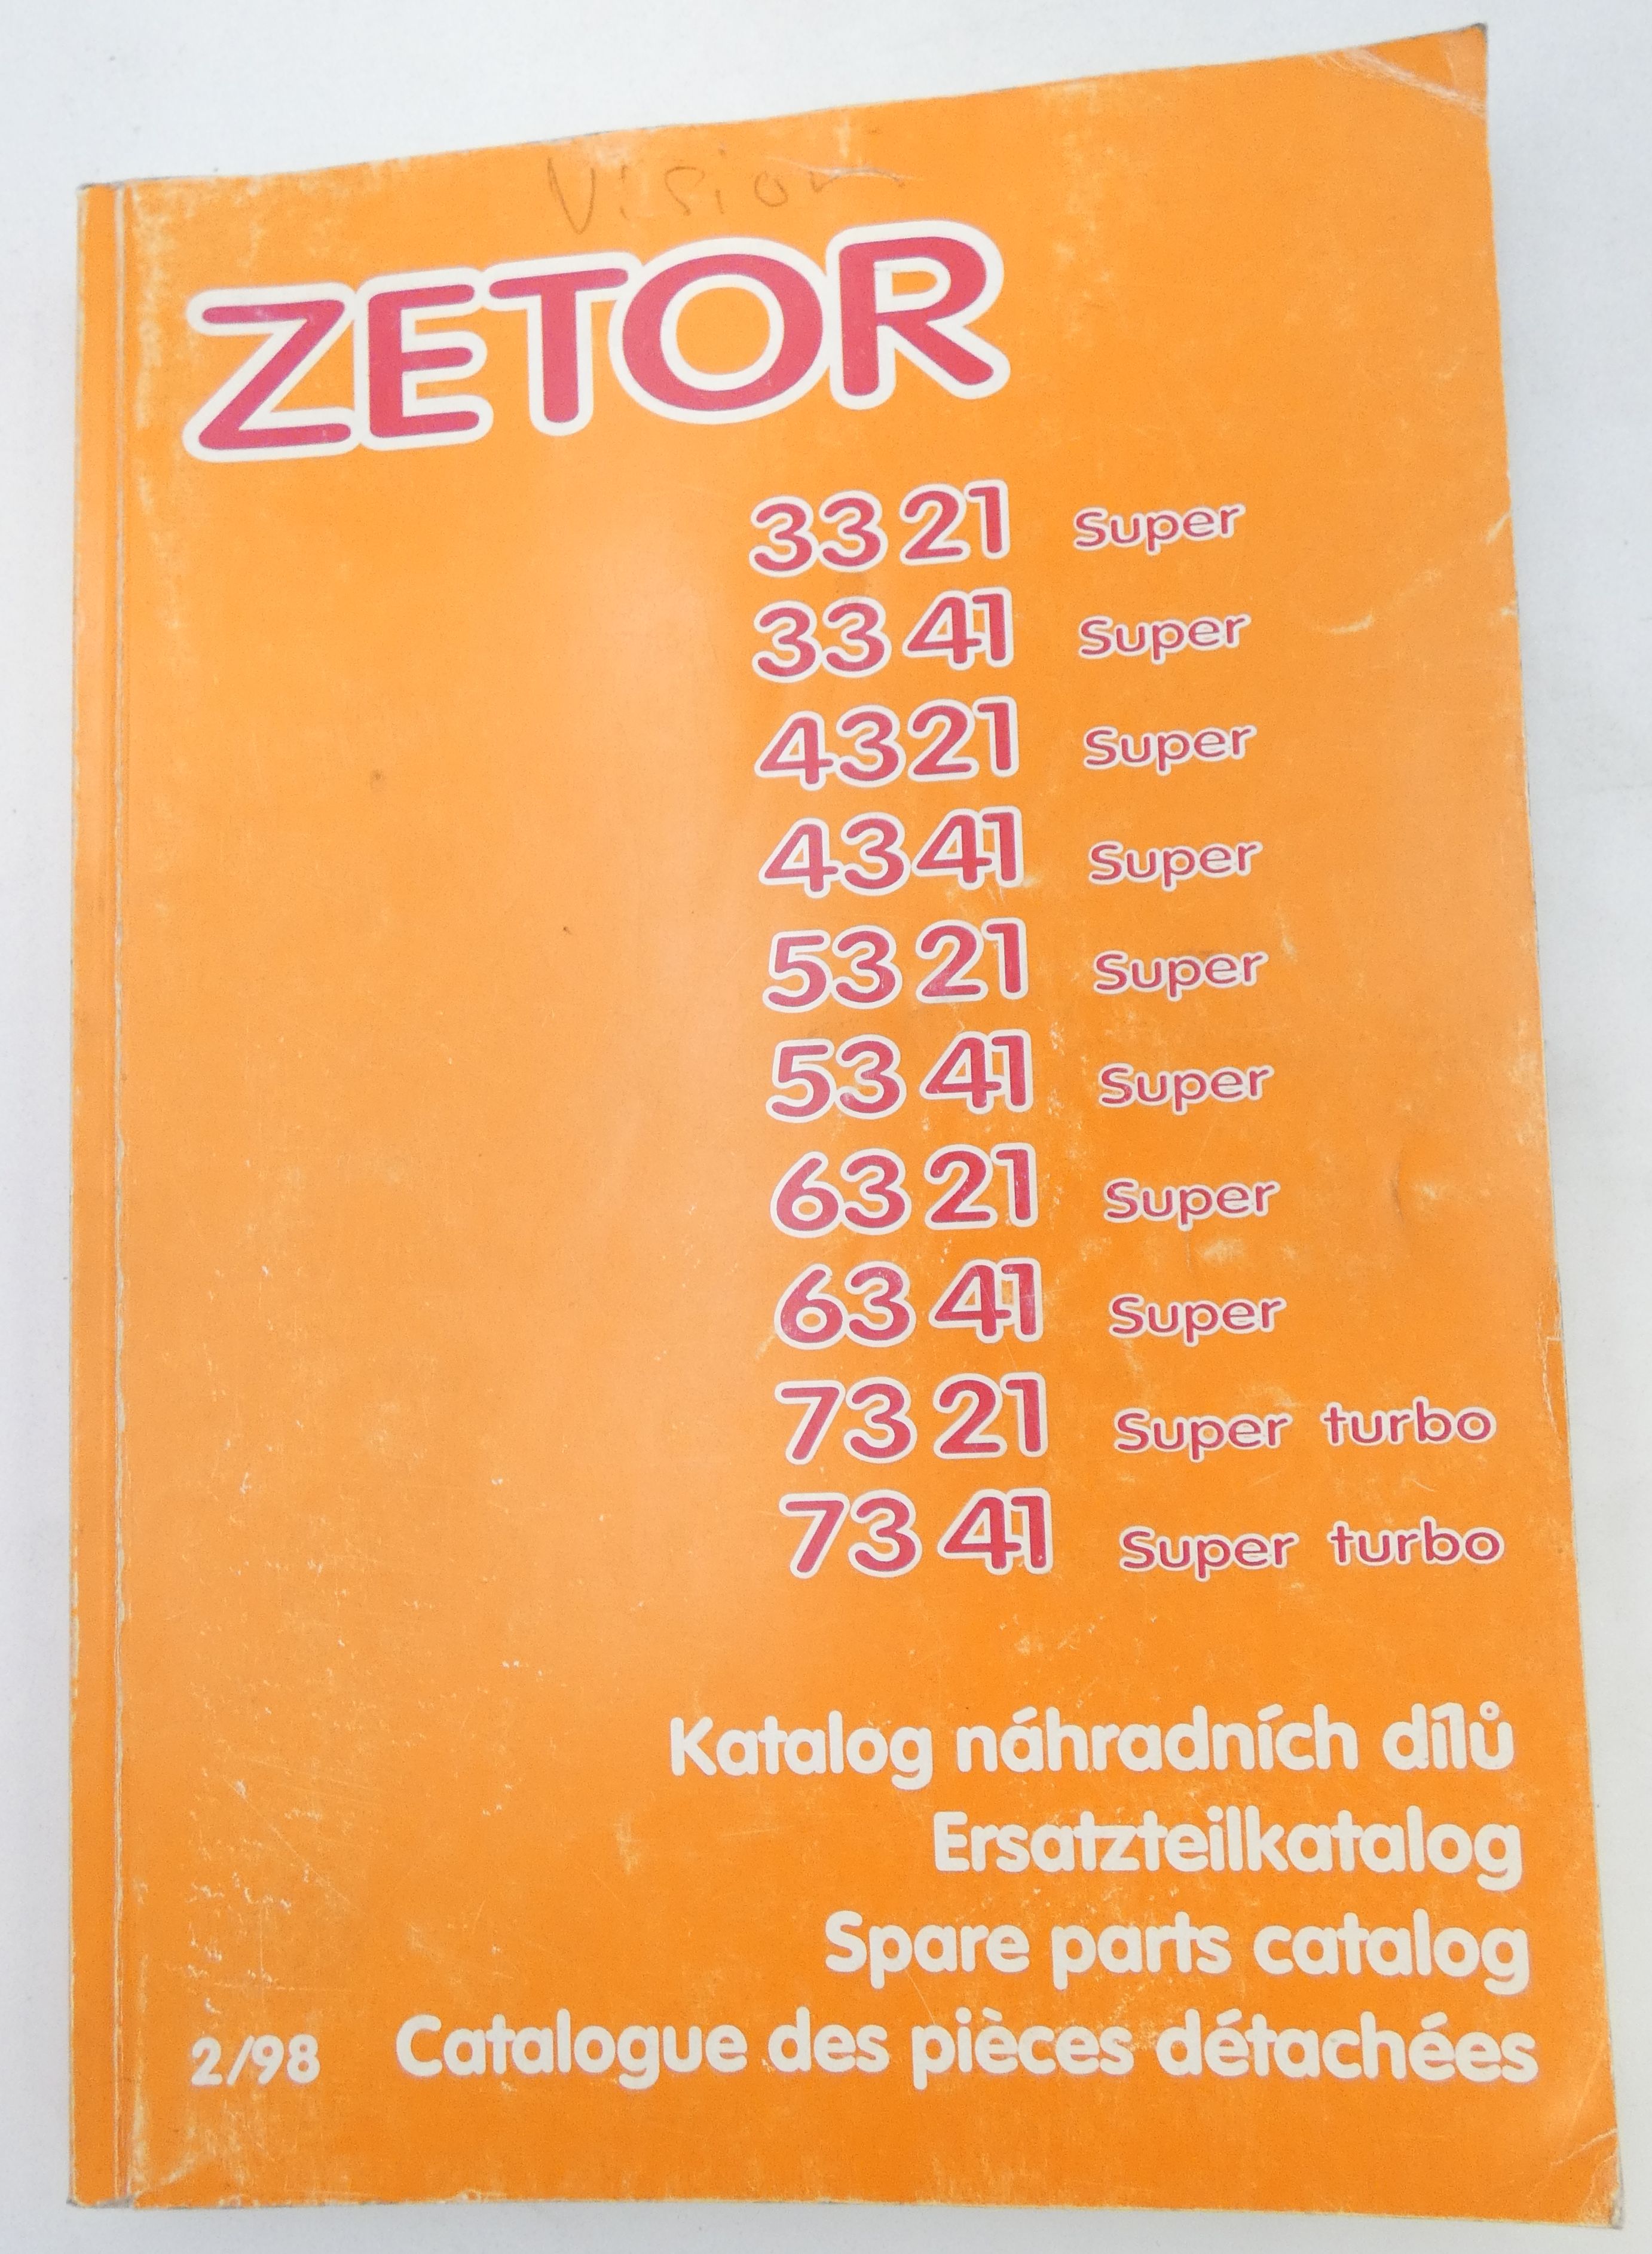 Zetor 3321, 3341, 4341, 5321, 5341, 6321, 6341 Super and 4321 Super turbo, 7341 Super turbo spare parts catalog